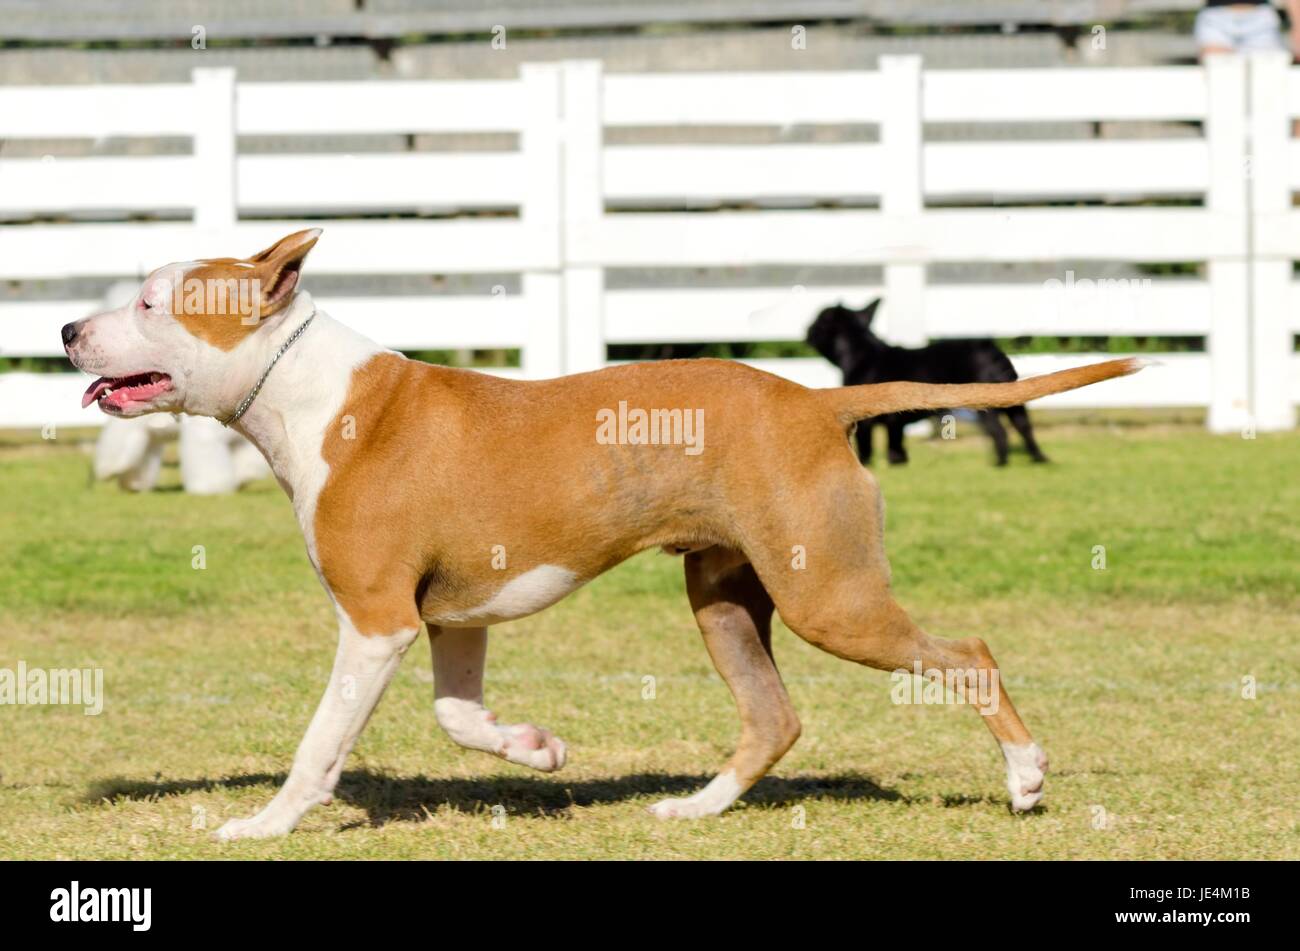 Un petit, jeune, beau, blanc et sable rouge American Staffordshire Terrier marcher sur l'herbe tout en collant sa langue, et à la fois ludique et joyeux. Ses oreilles sont coupées. Banque D'Images